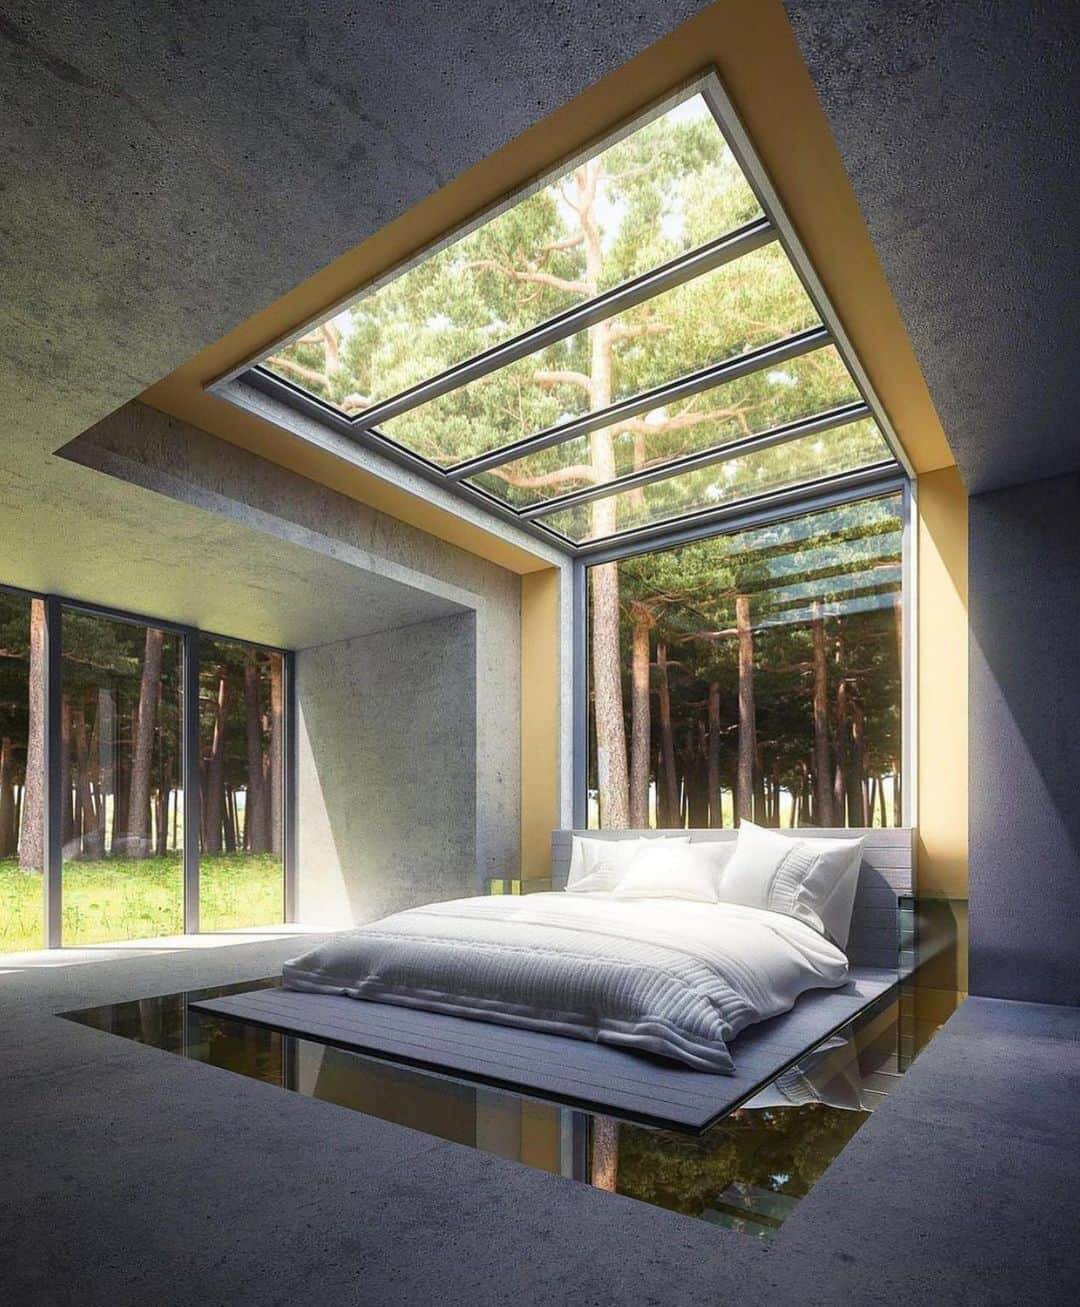 10 ý tưởng thiết kế phòng ngủ dưới giếng trời, mỗi ngày trôi qua đều là một ngày 